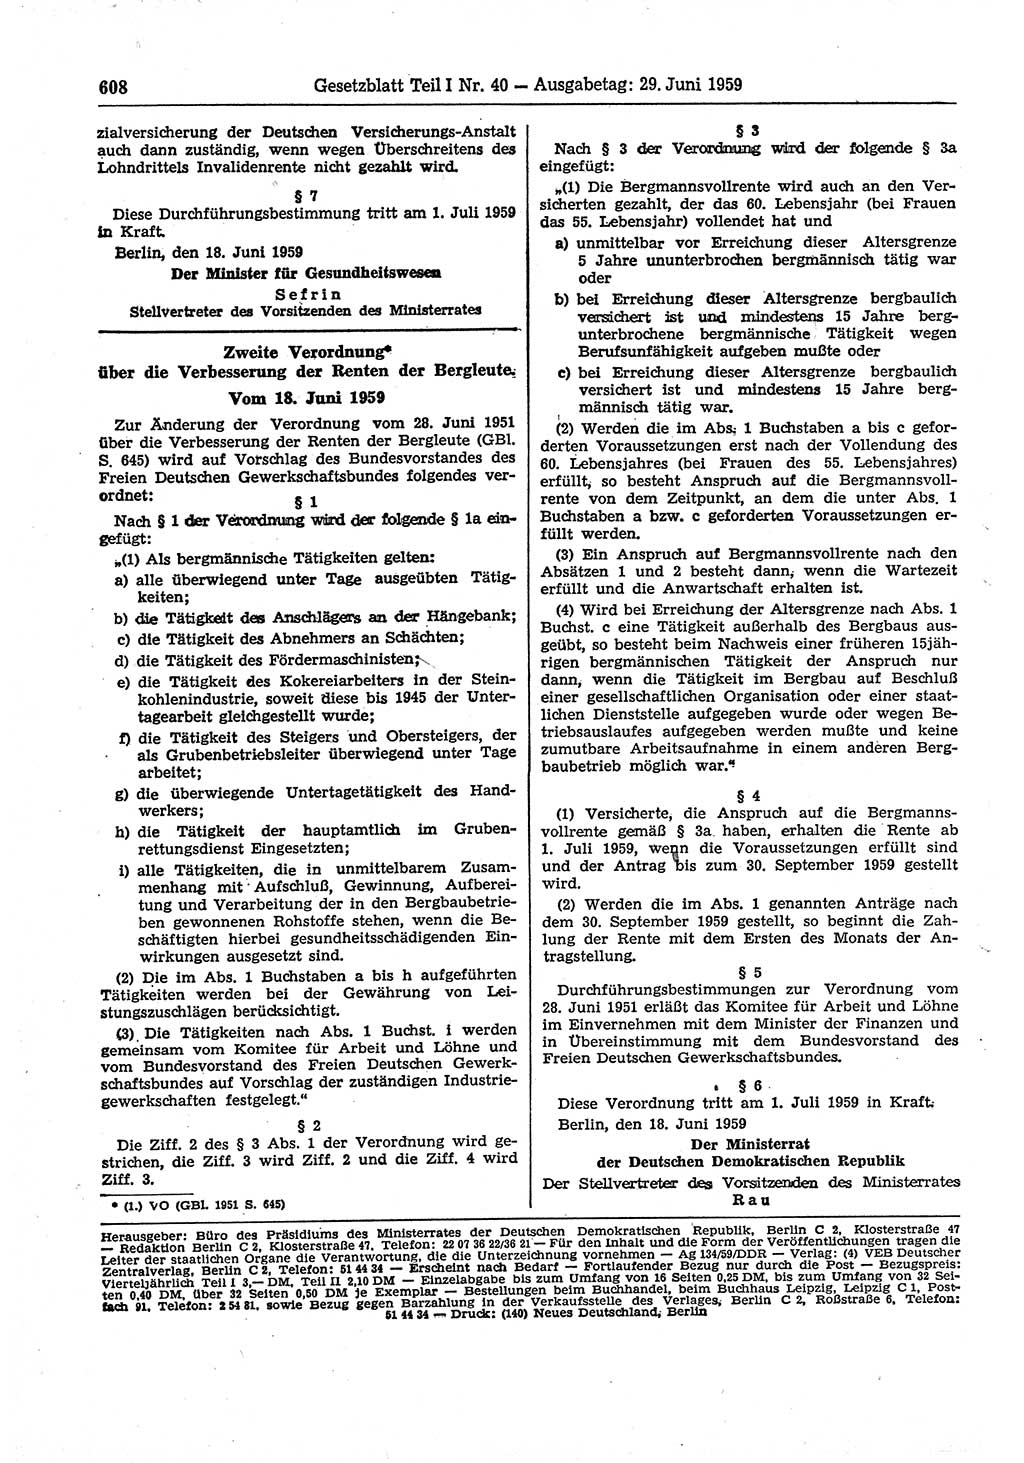 Gesetzblatt (GBl.) der Deutschen Demokratischen Republik (DDR) Teil Ⅰ 1959, Seite 608 (GBl. DDR Ⅰ 1959, S. 608)